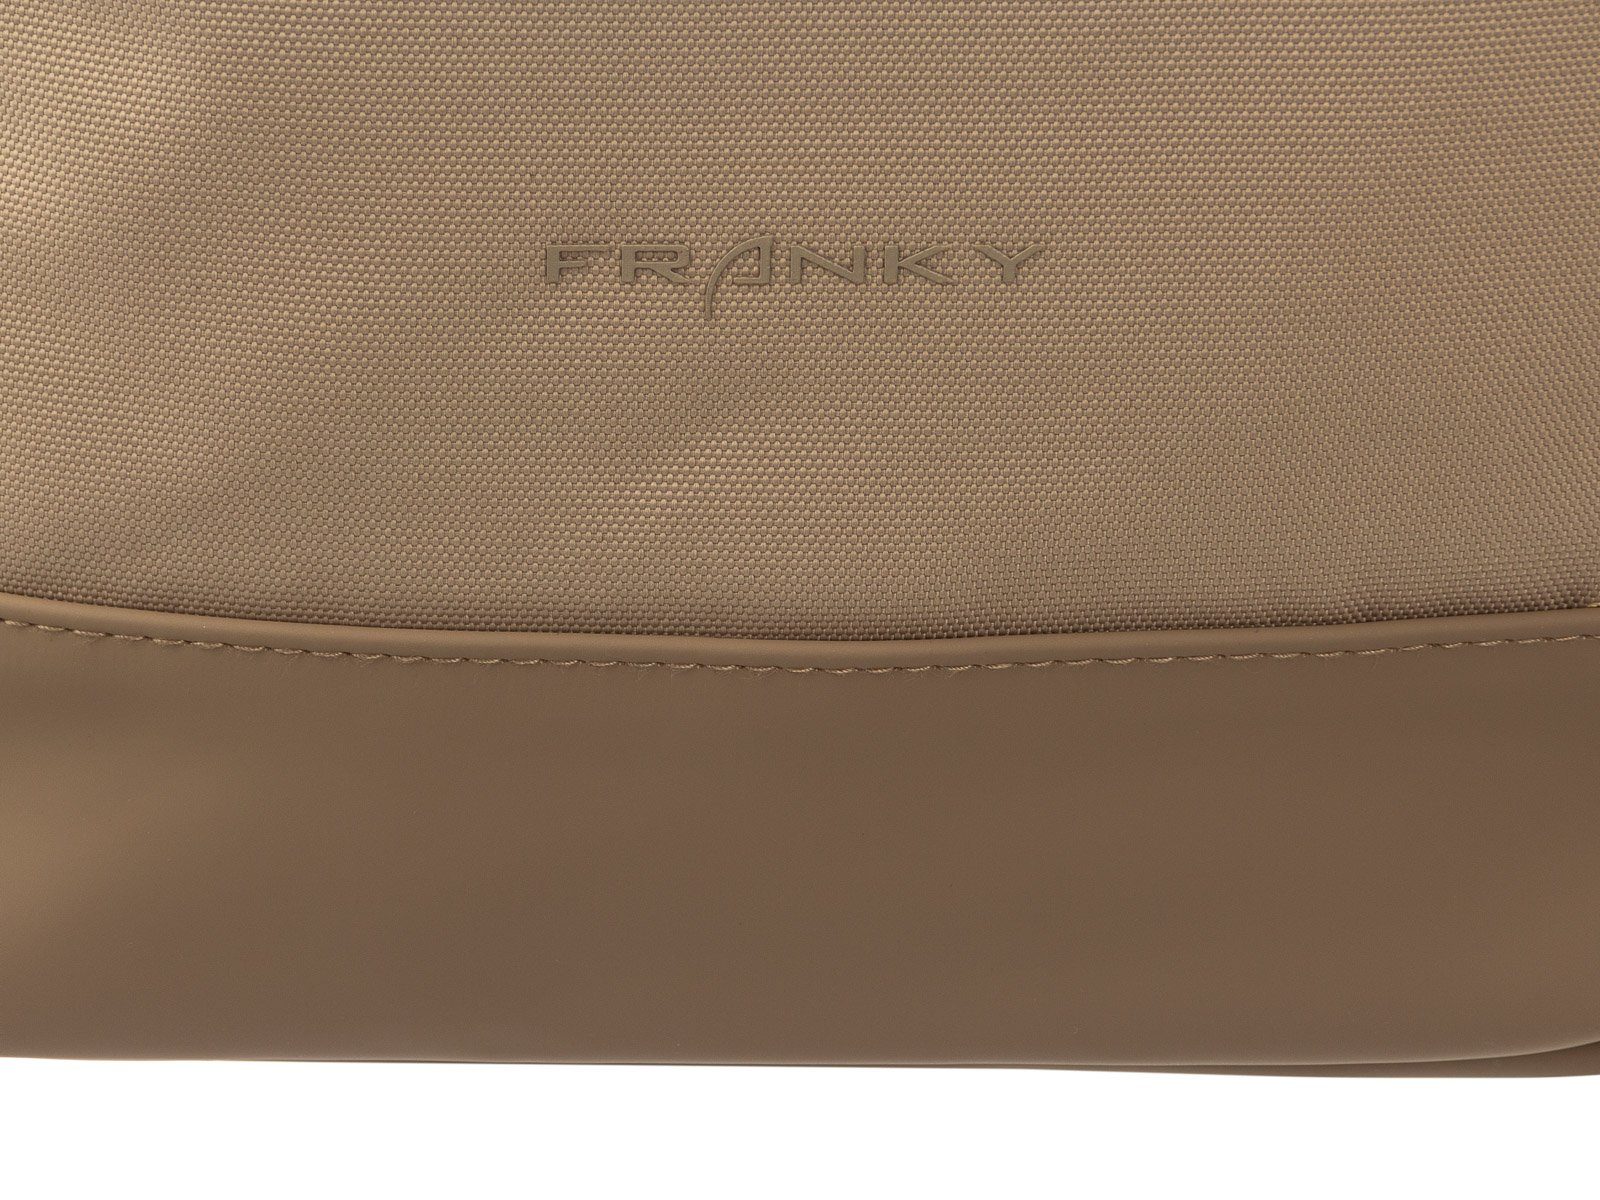 Liter Freizeit-Rucksack schwarz mit RS77 Freizeitrucksack Franky Laptopfach, 15" Franky Rollfalte Laptopfach ca.21